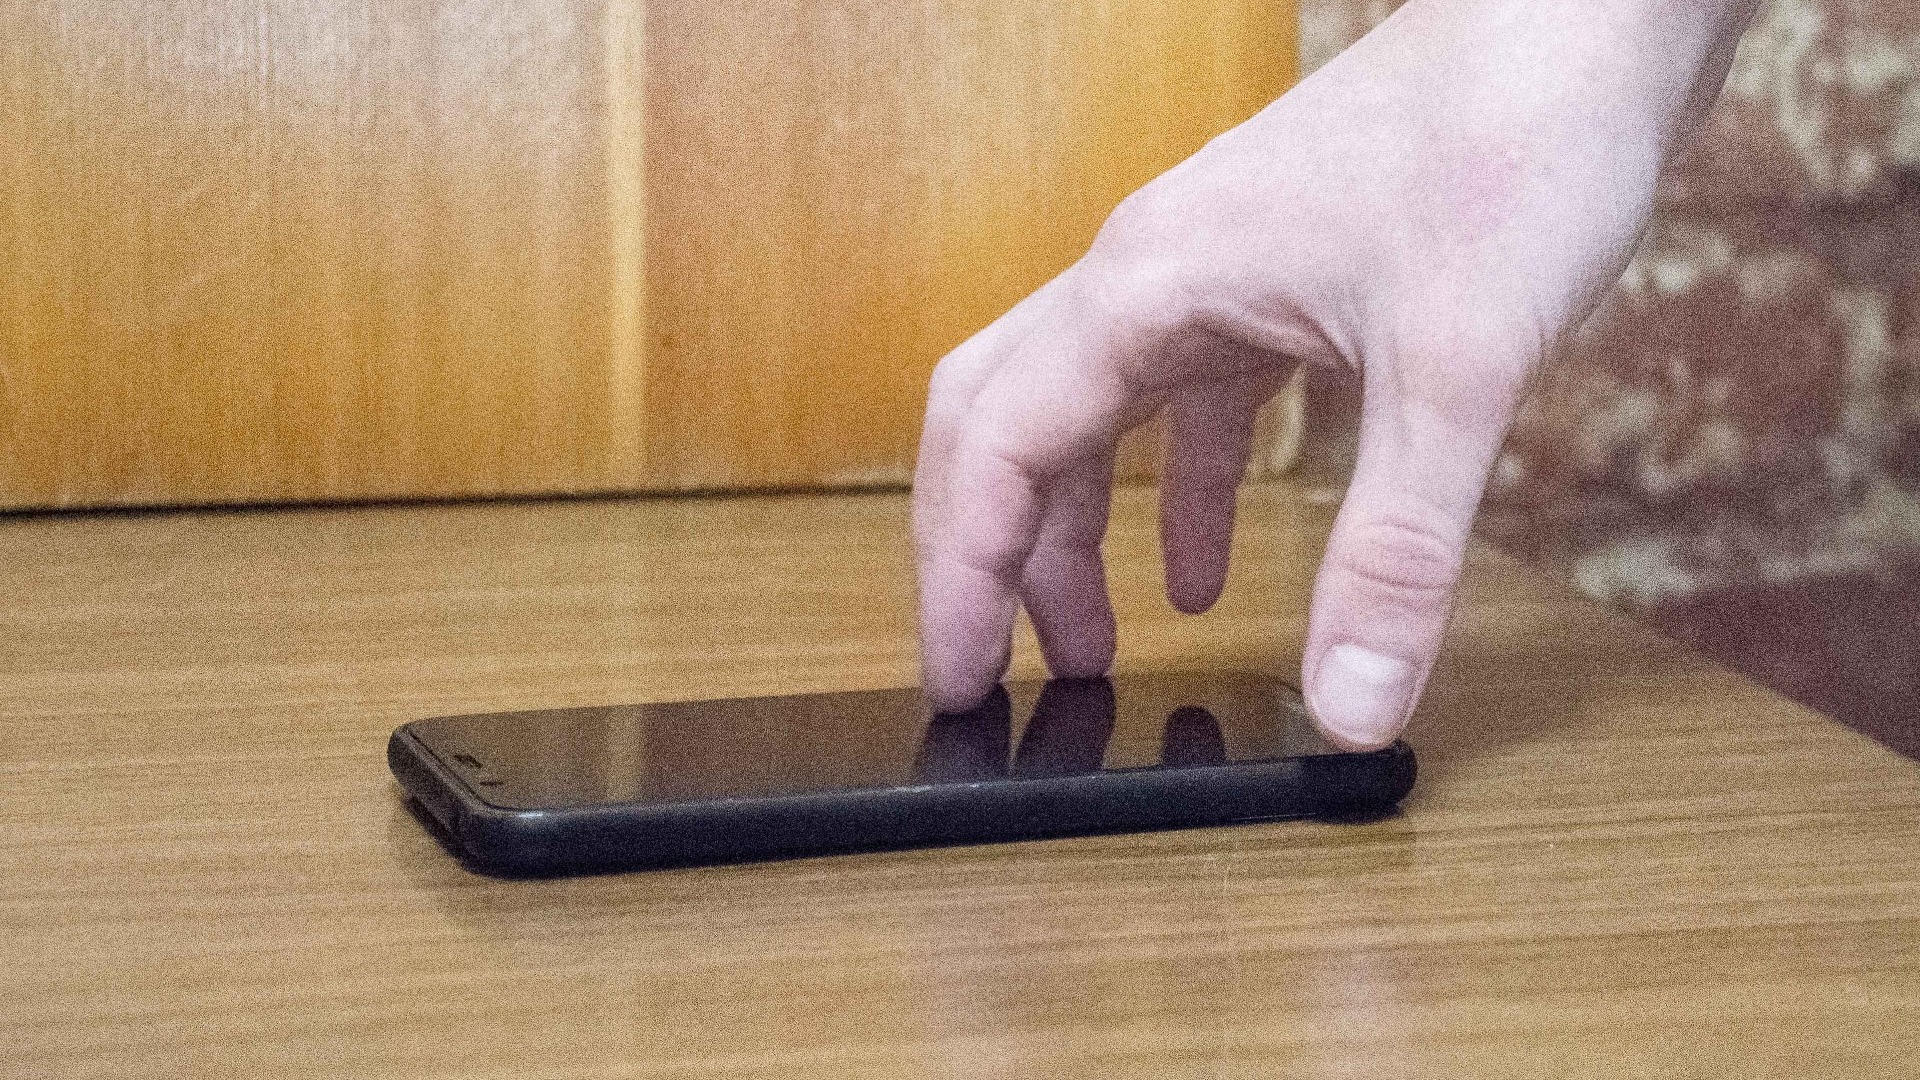 За кражу телефона на ж/д станции тагильчанке грозит до 5 лет тюрьмы